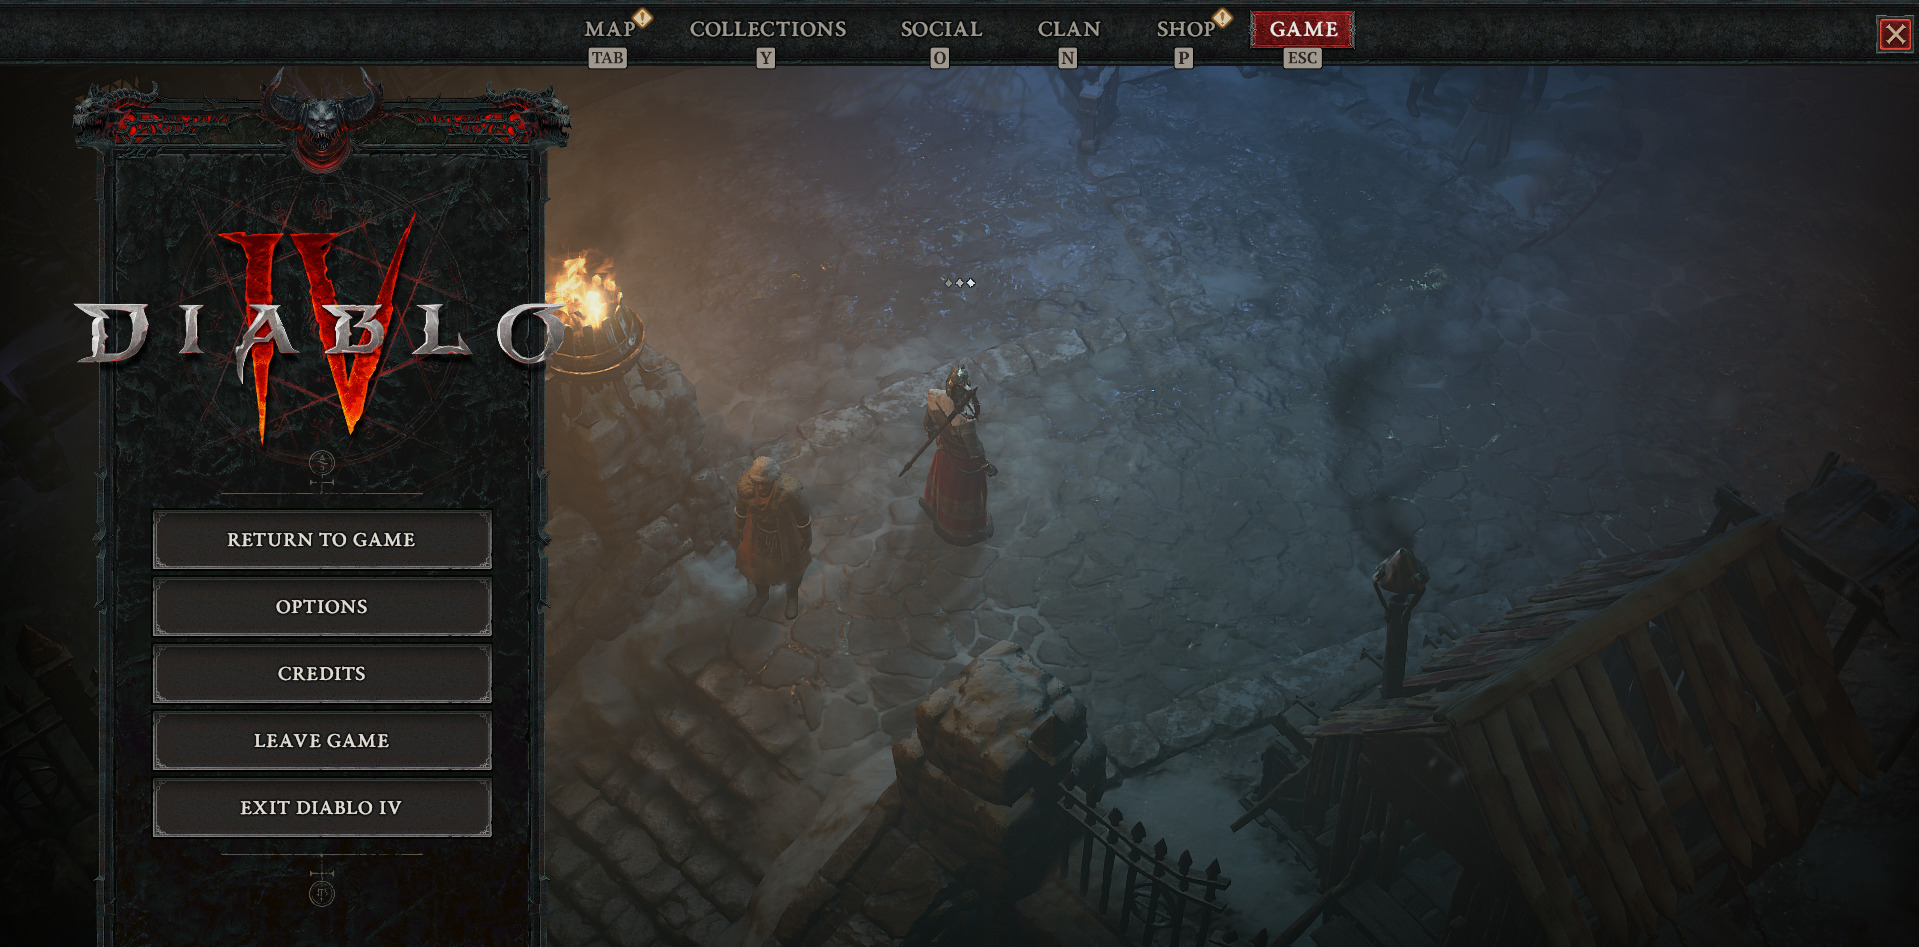 A screenshot showing the Diablo 4 main screen